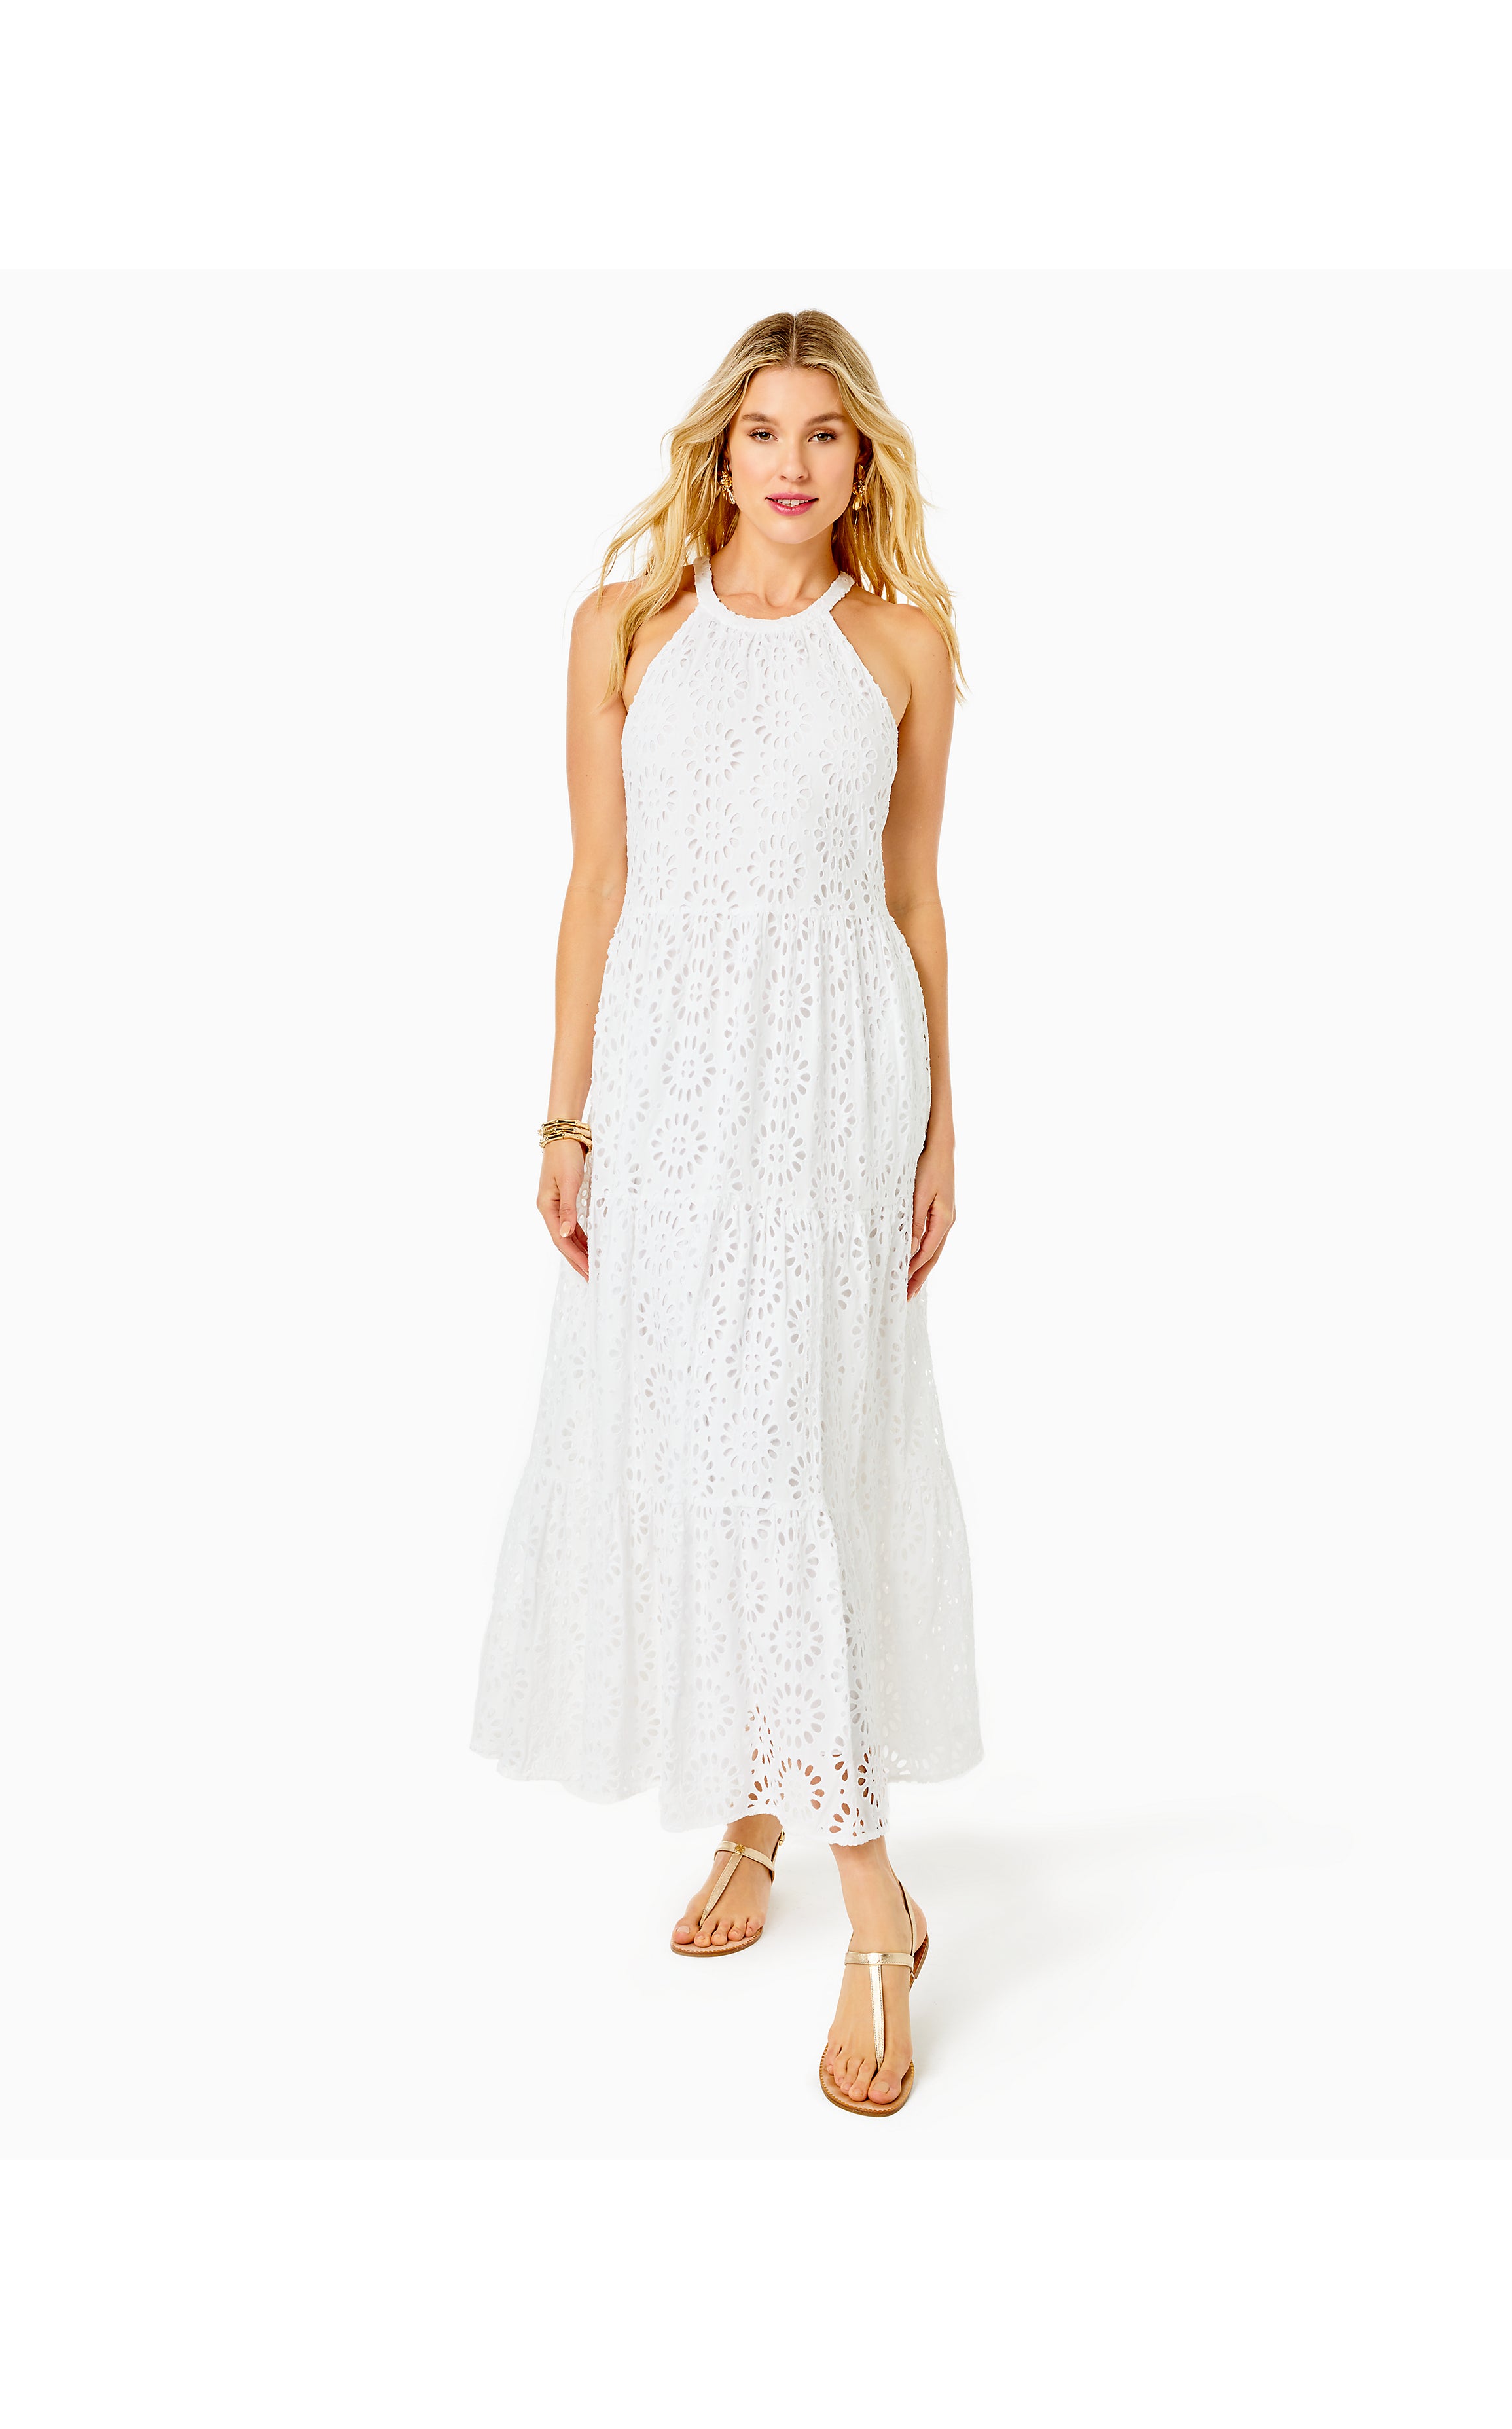 Beccalyn Eyelet Maxi Dress | Resort White Oversized Pinwheel Rayon Eyelet